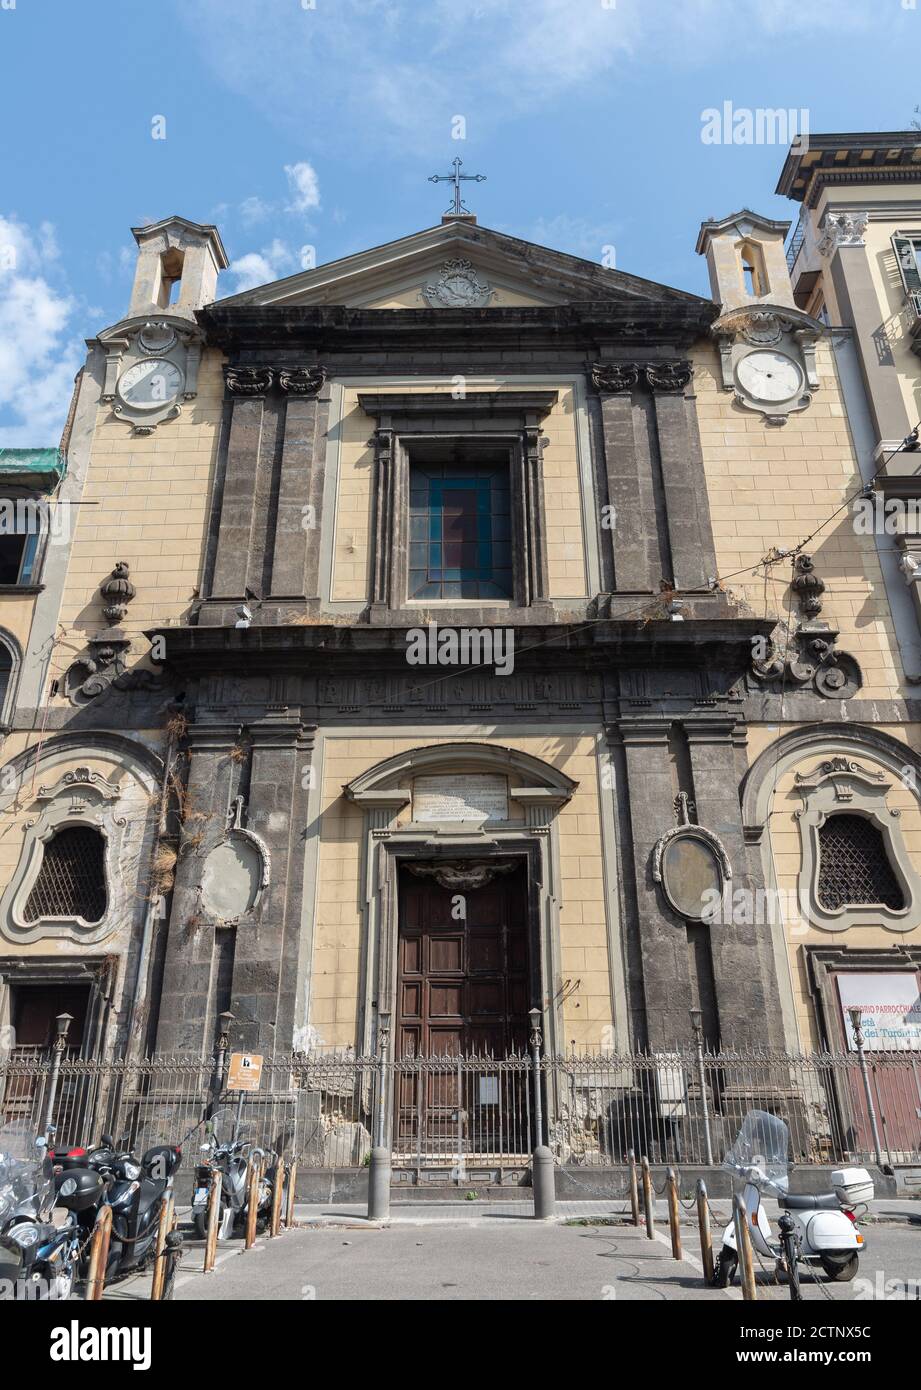 Napoli, Italia - 20 settembre 2020: L'esterno della Chiesa di San Diego dell'Ospedale, conosciuta anche come San Giuseppe maggiore, è una delle monumentali c. Foto Stock